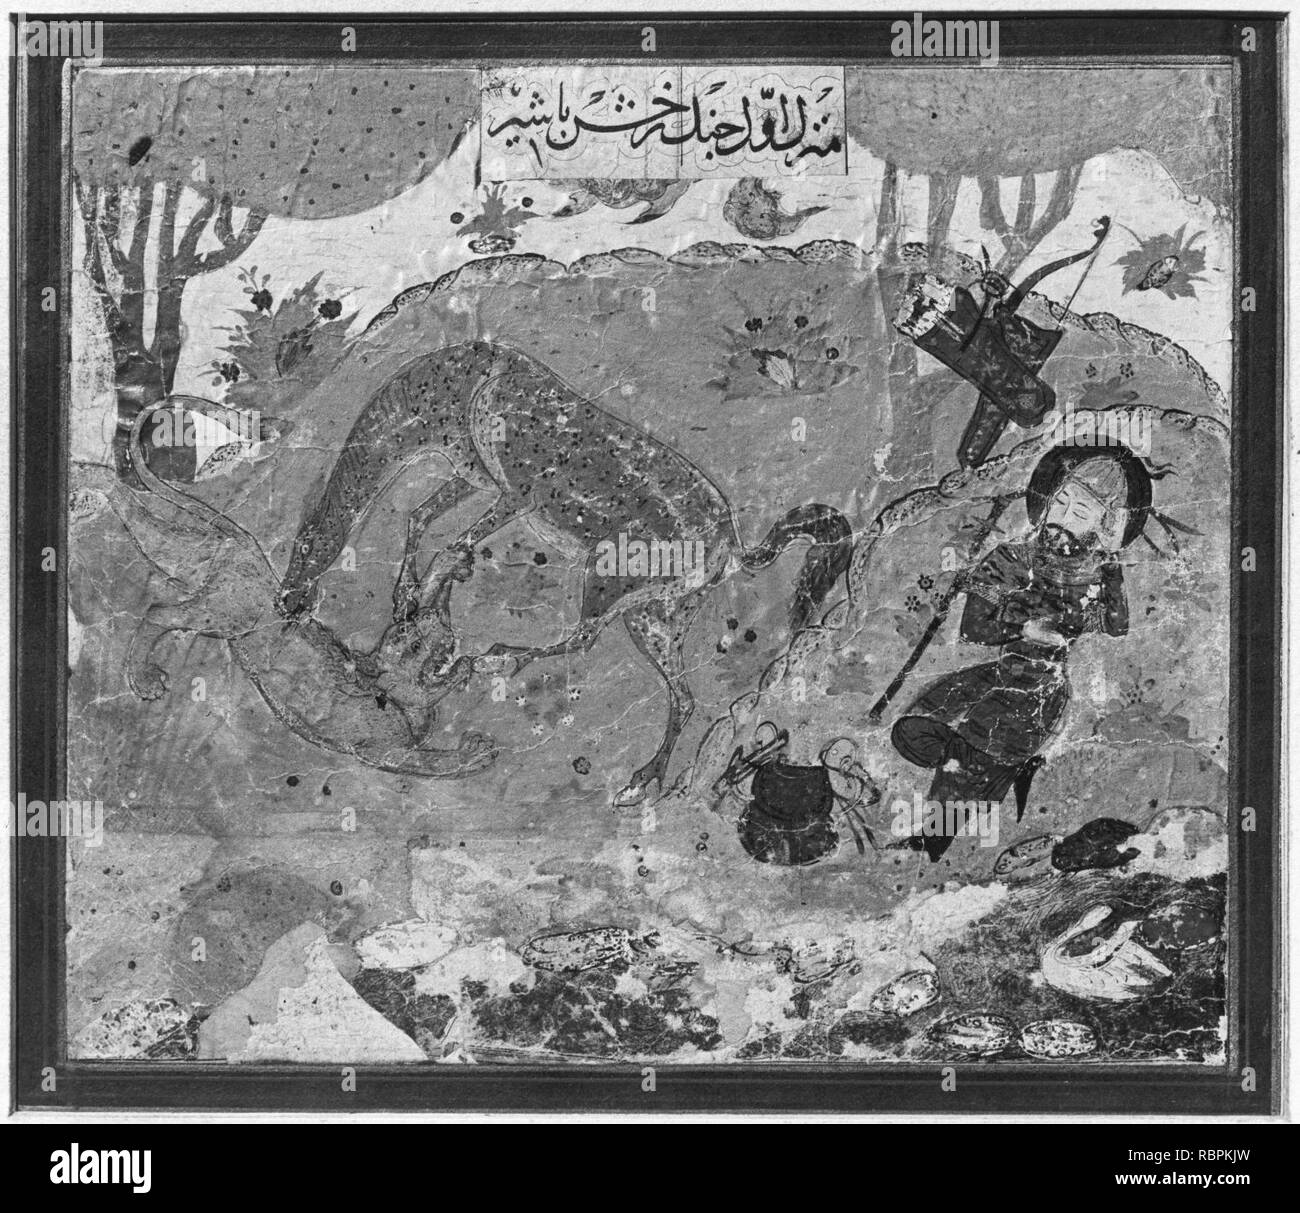 "Rustam der erste Kurs - Rakhsh tötet ein Löwe', Folio aus einem shahnama (Buch der Könige) Stockfoto